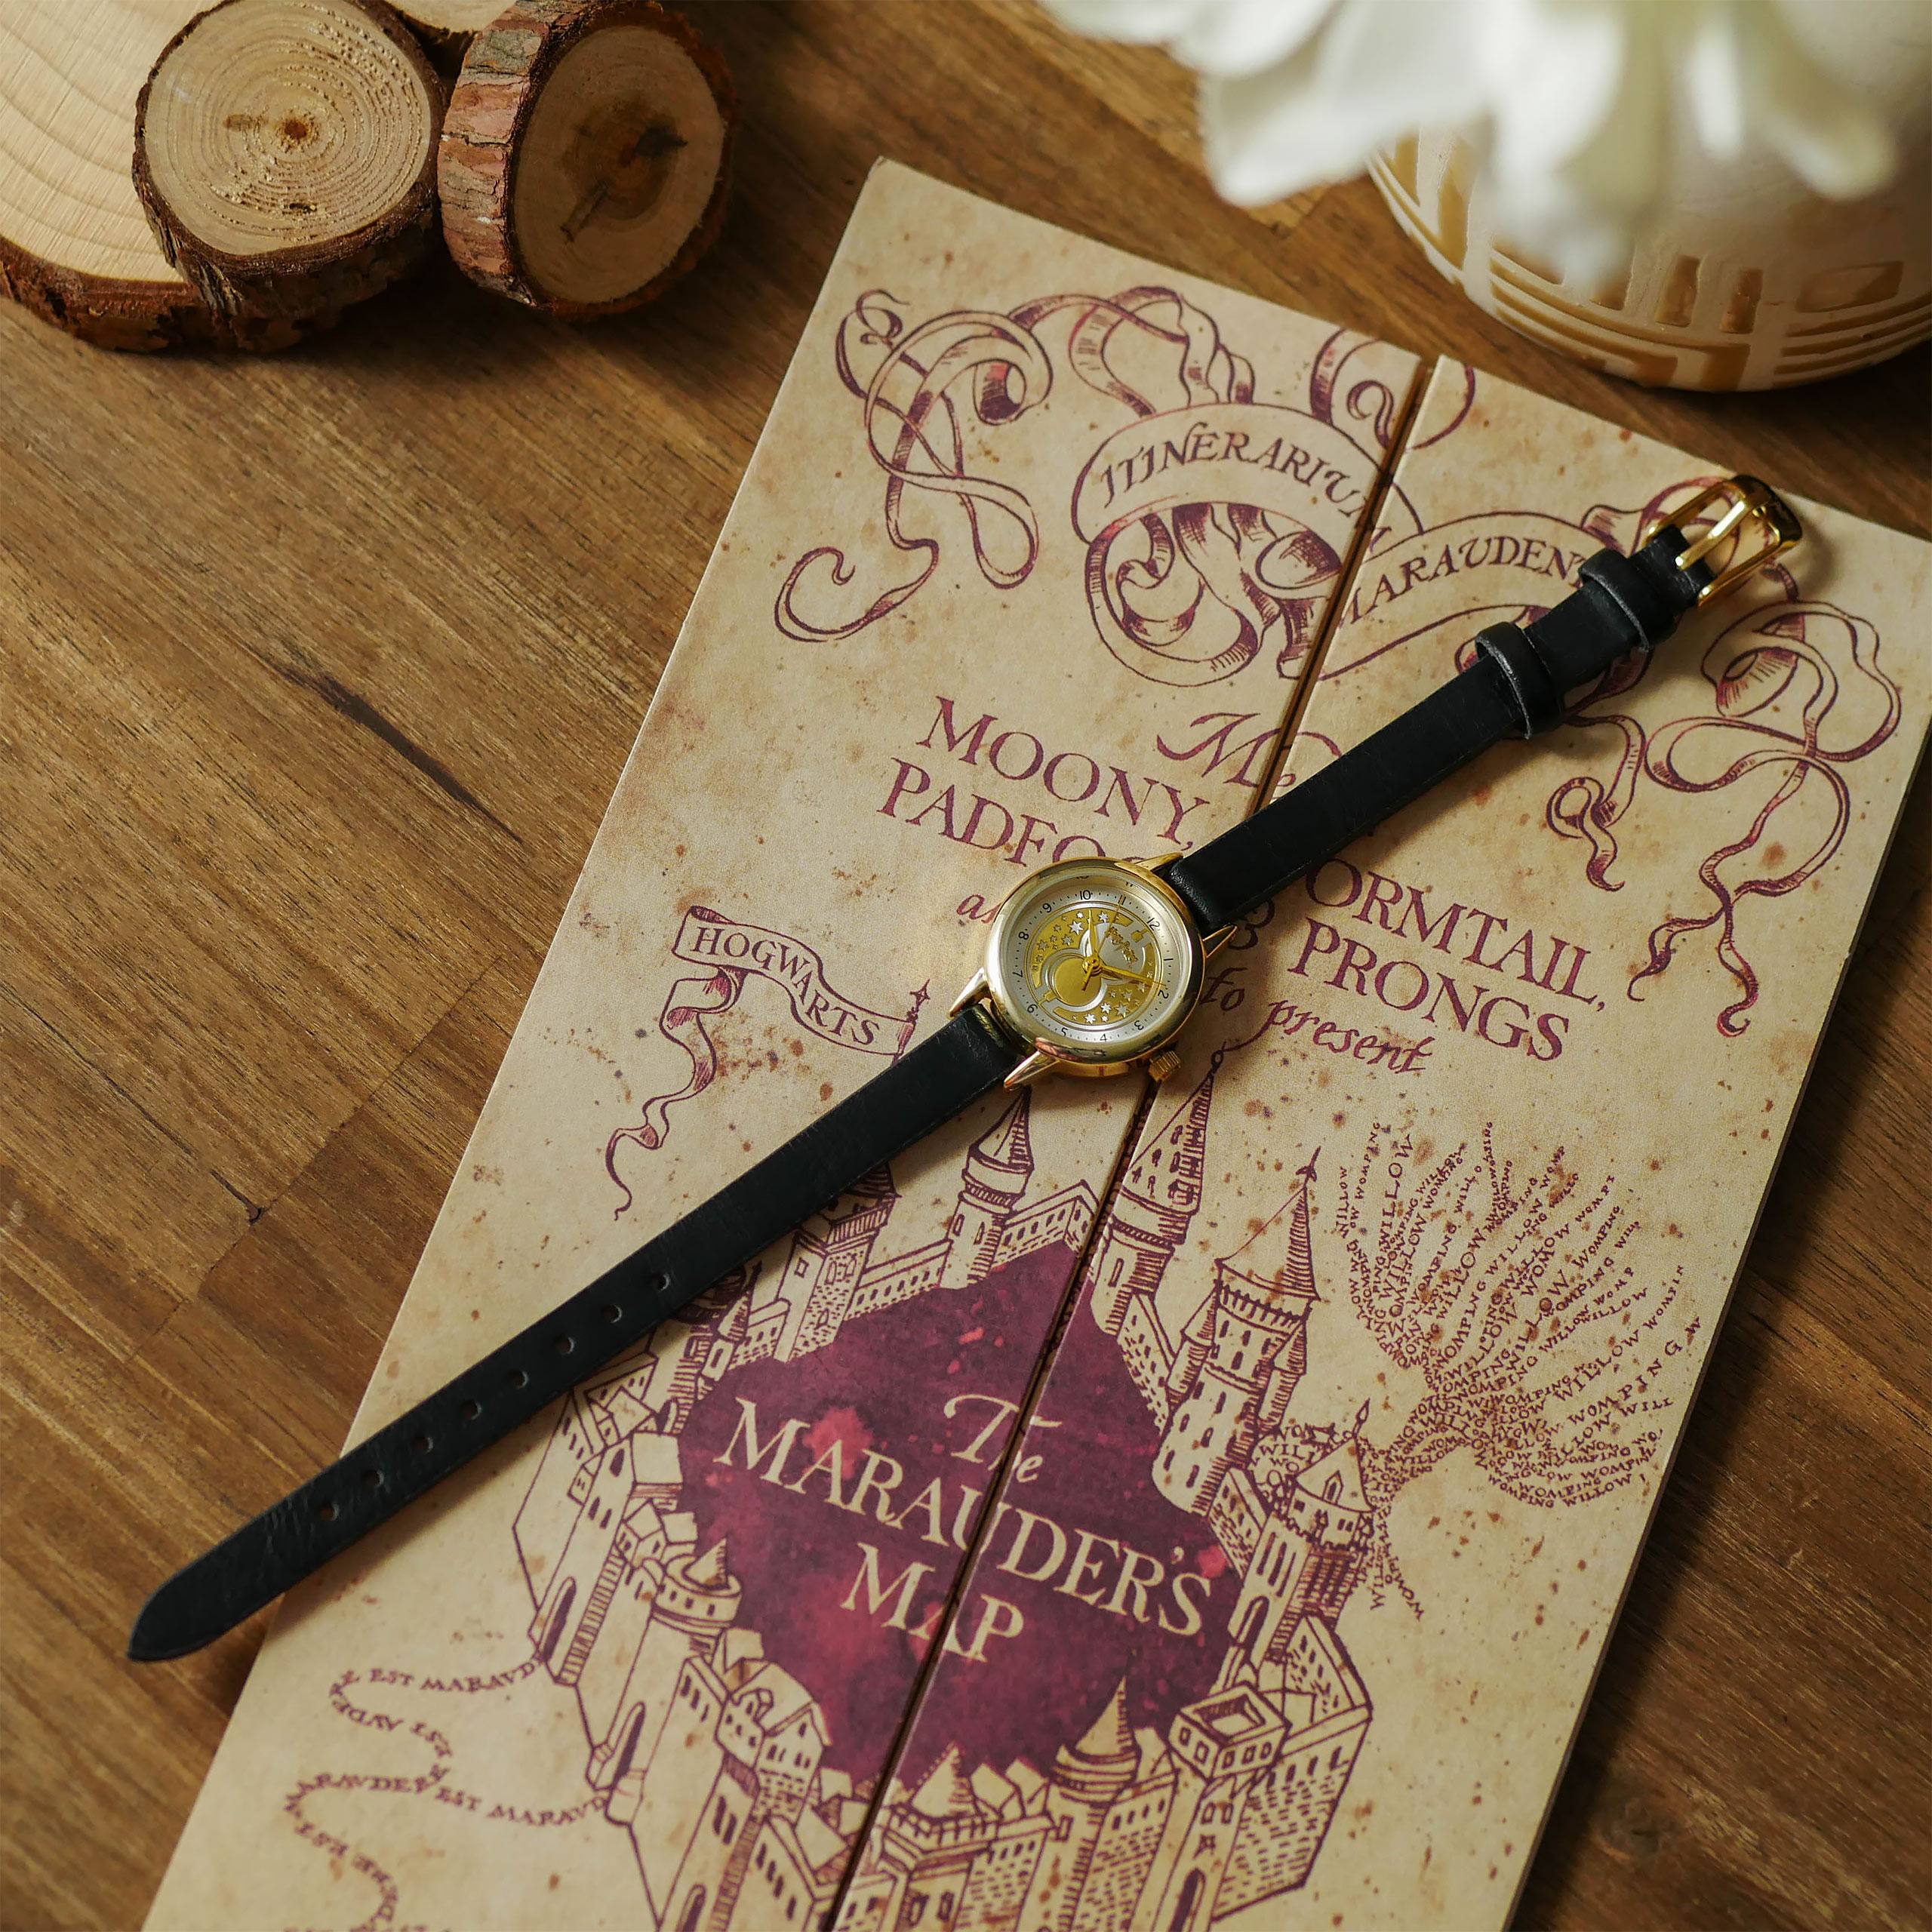 Harry Potter - Zeitumkehrer Armbanduhr